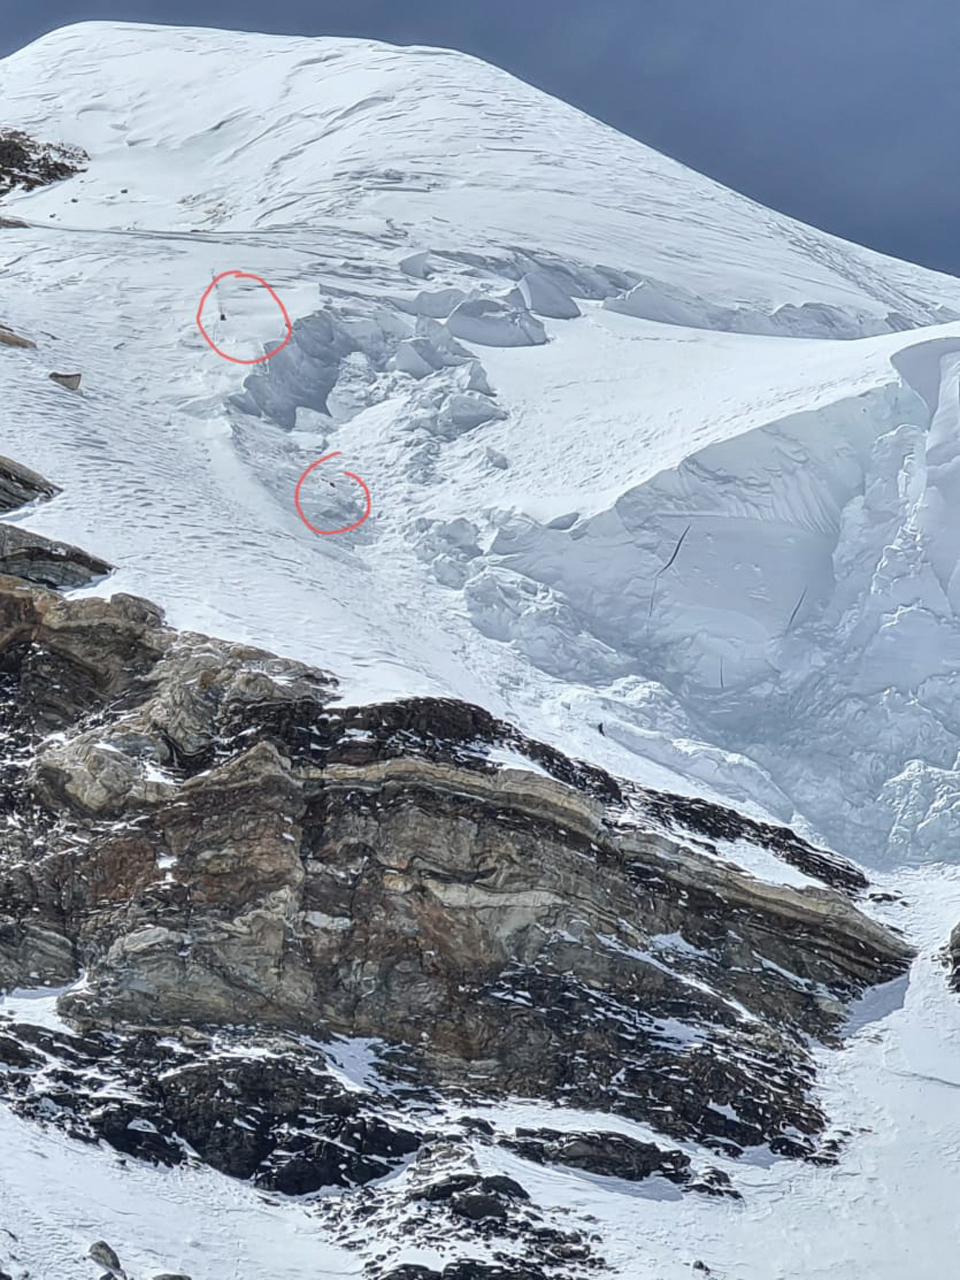 K2 4캠프에서 올려다 본 보틀넥 위쪽 등반루트. 두 개의 붉은 동그라미는 각각 욘 스노리(위쪽)와 무하마드 알리 사드파라(아래쪽)의 시신으로 판명됐다. 후안 파블로 모르의
시신은 보틀넥 아래쪽에서 발견됐다. 사진 발렌틴 시파빈